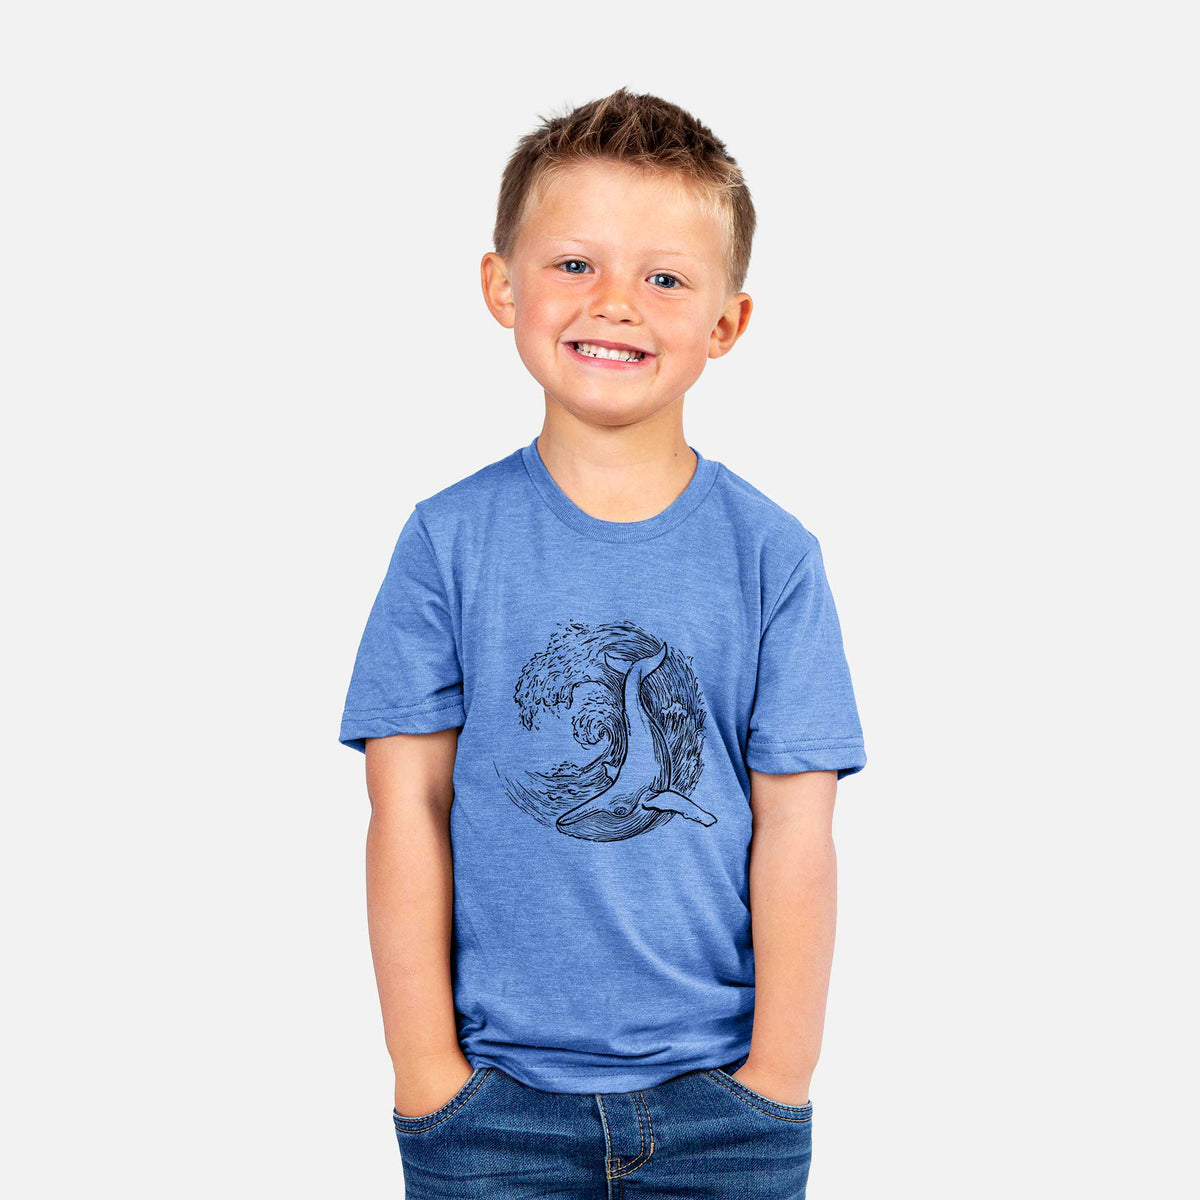 Whale Wave - Kids Shirt